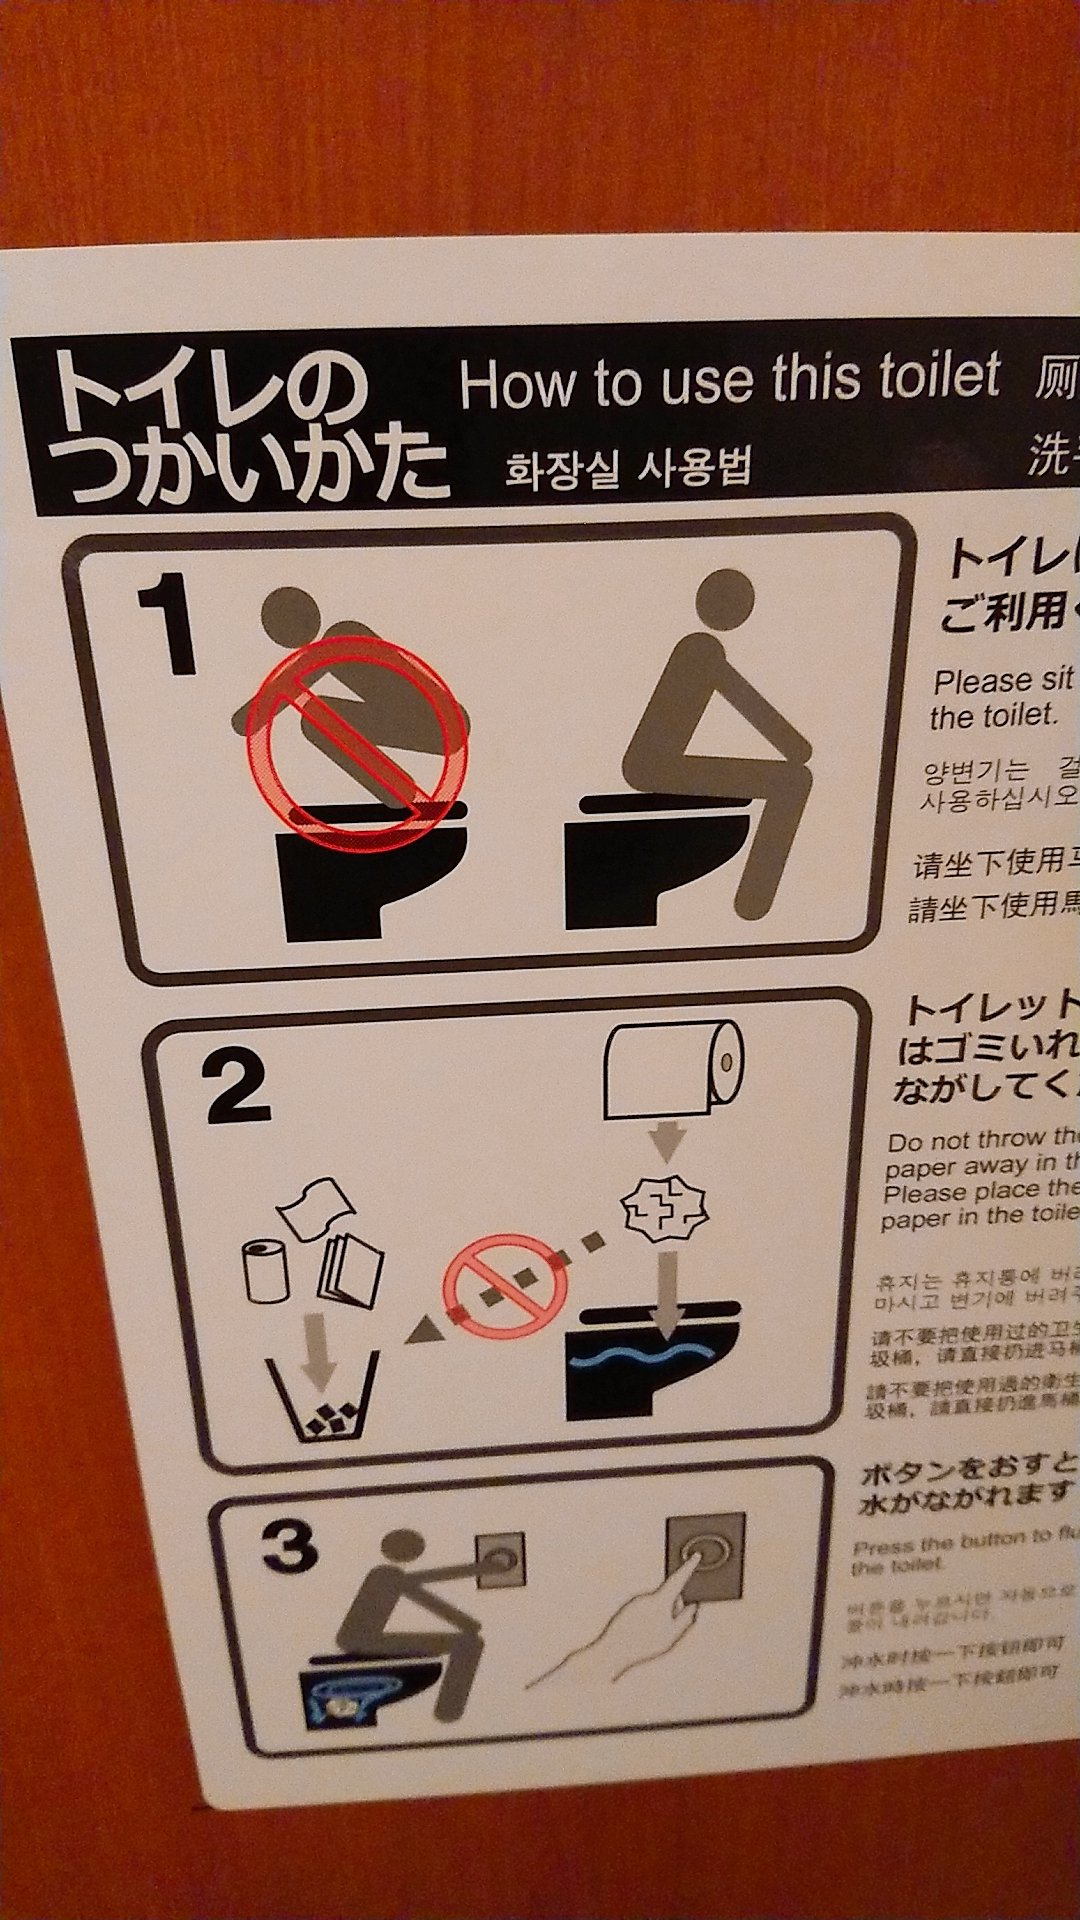 Pl 扇町駅のトイレ 裏ガーゴイルスタイルを禁じられてる T Co Xidjuiazu0 Twitter